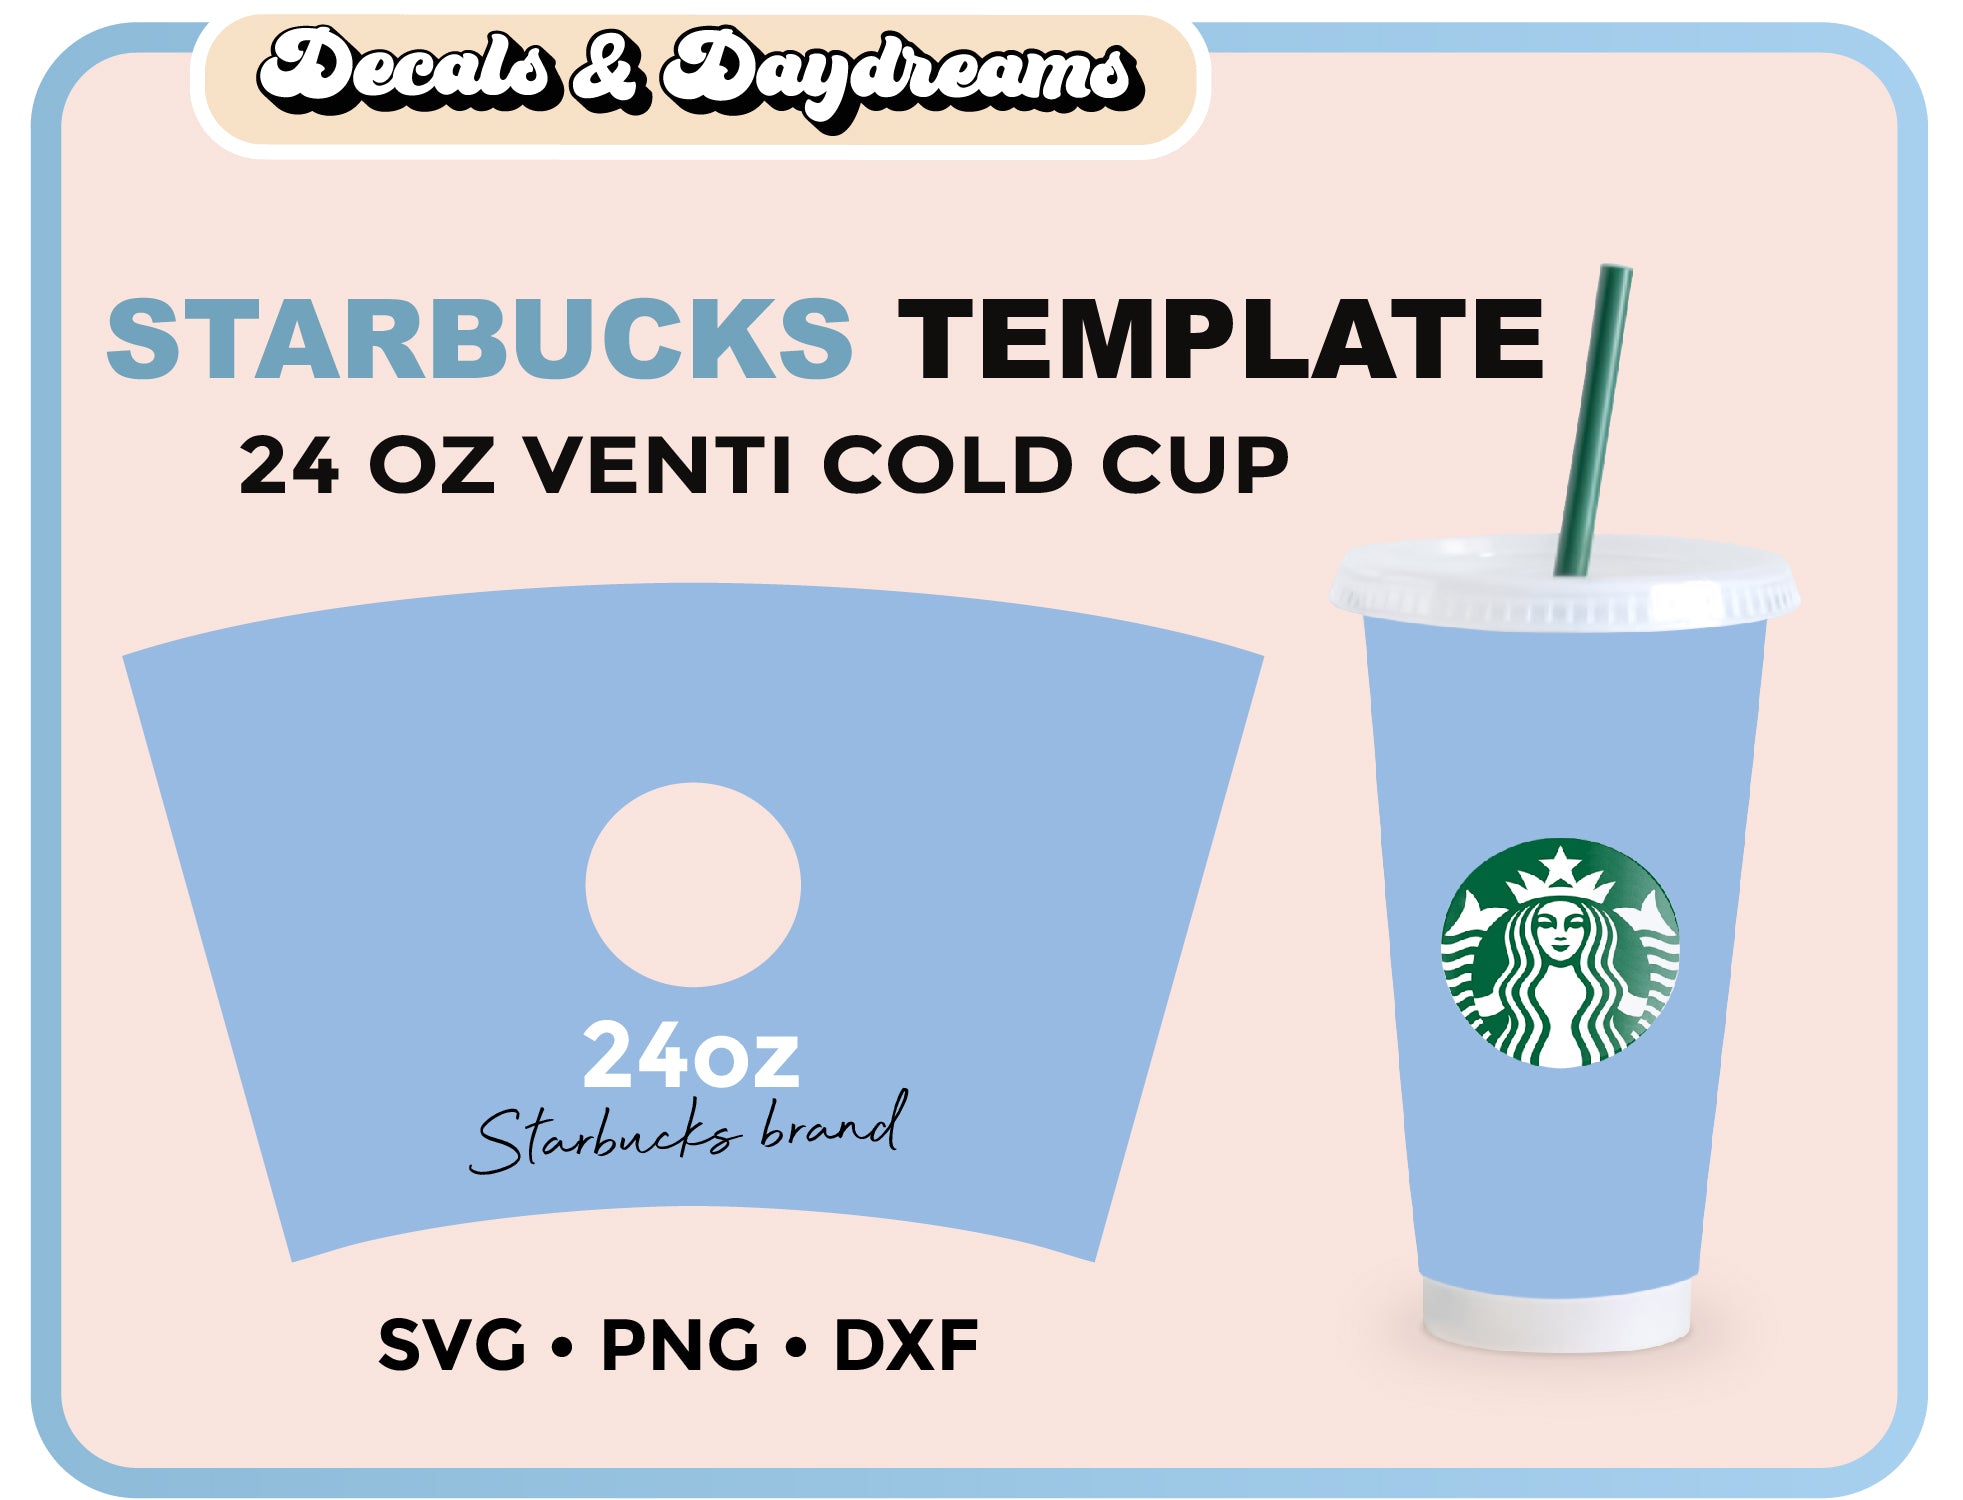 Starbucks Cold Cup Venti 24 oz